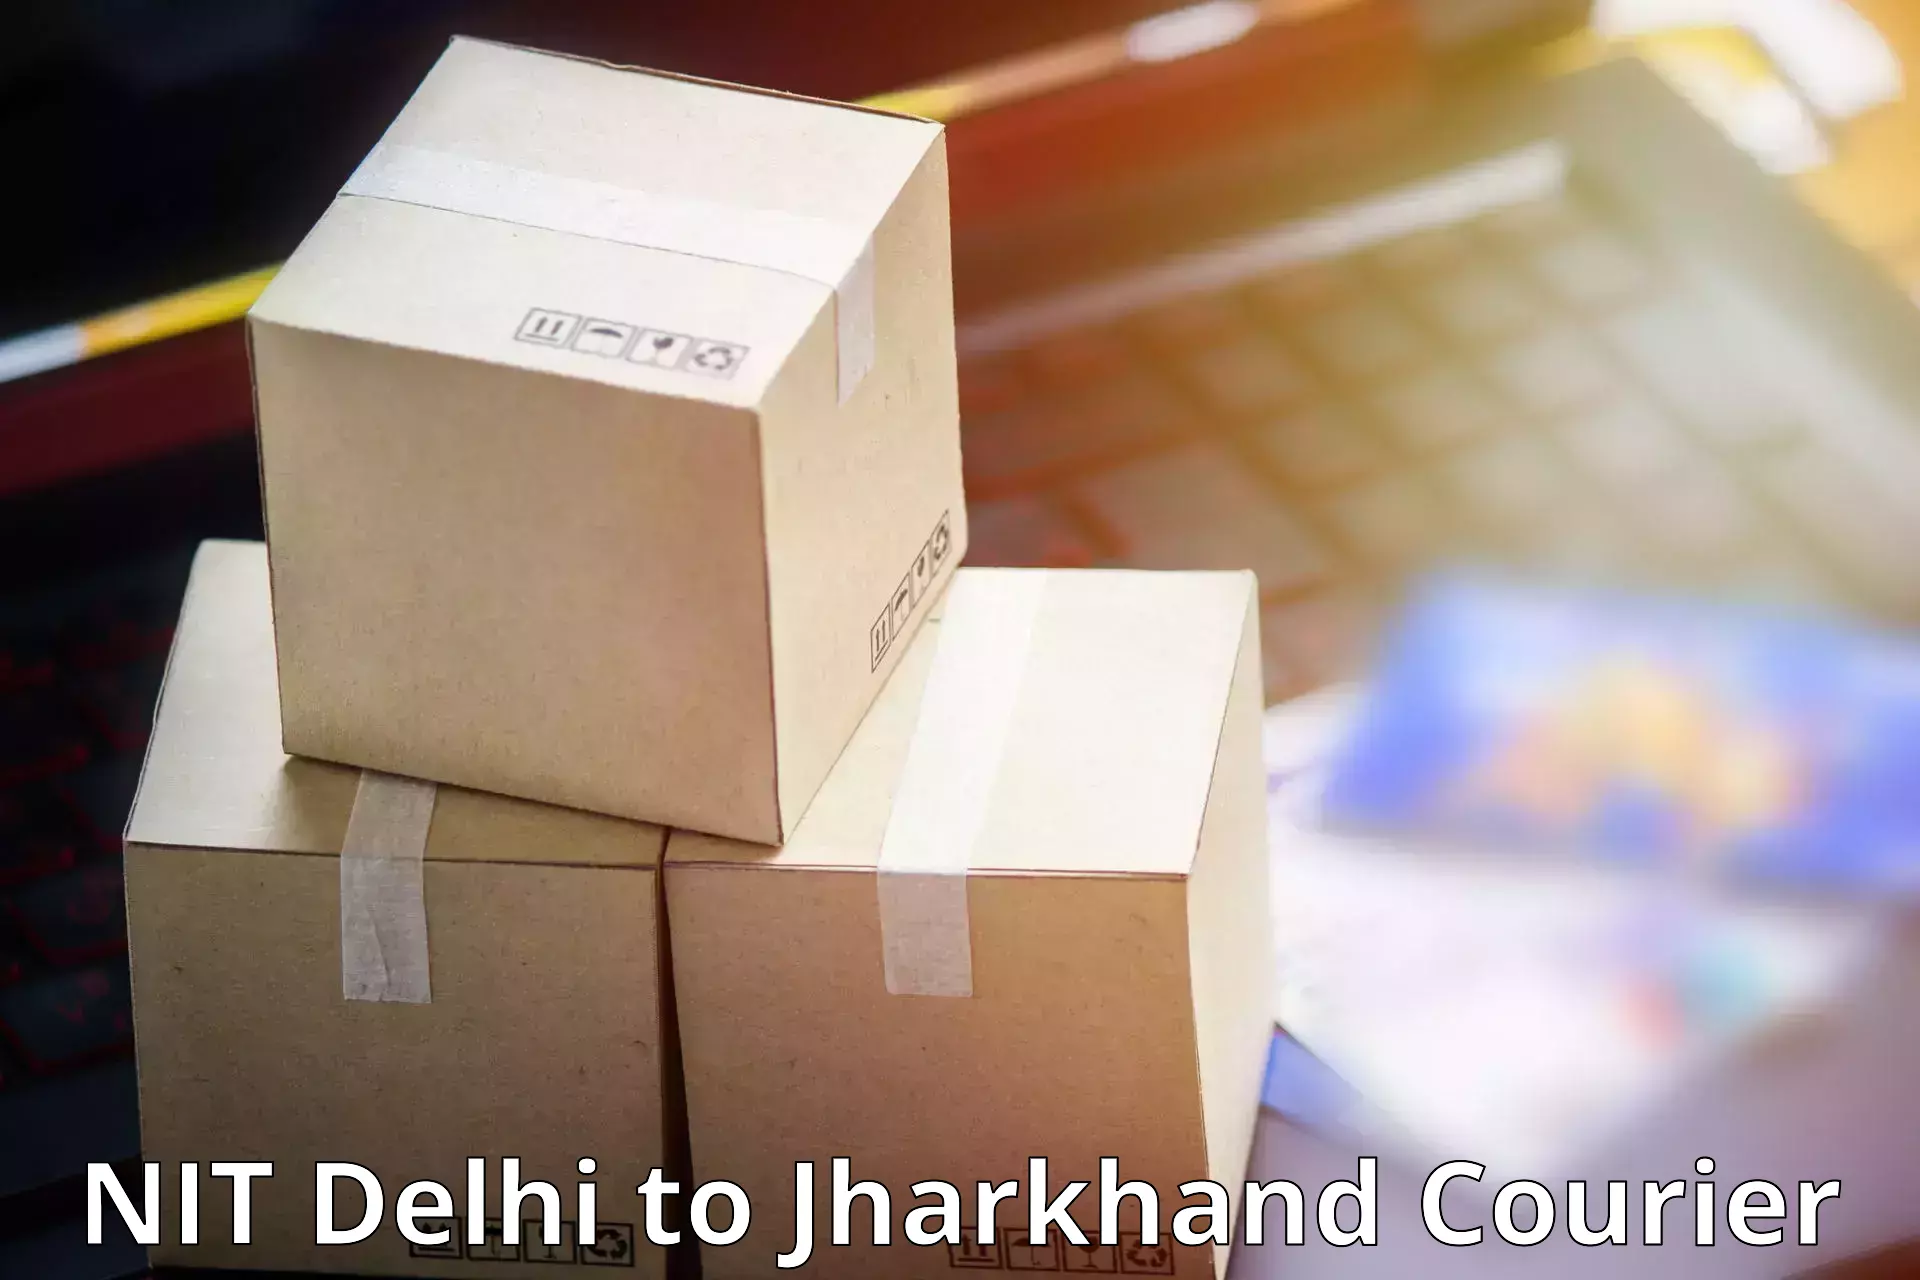 Modern parcel services NIT Delhi to Kedla